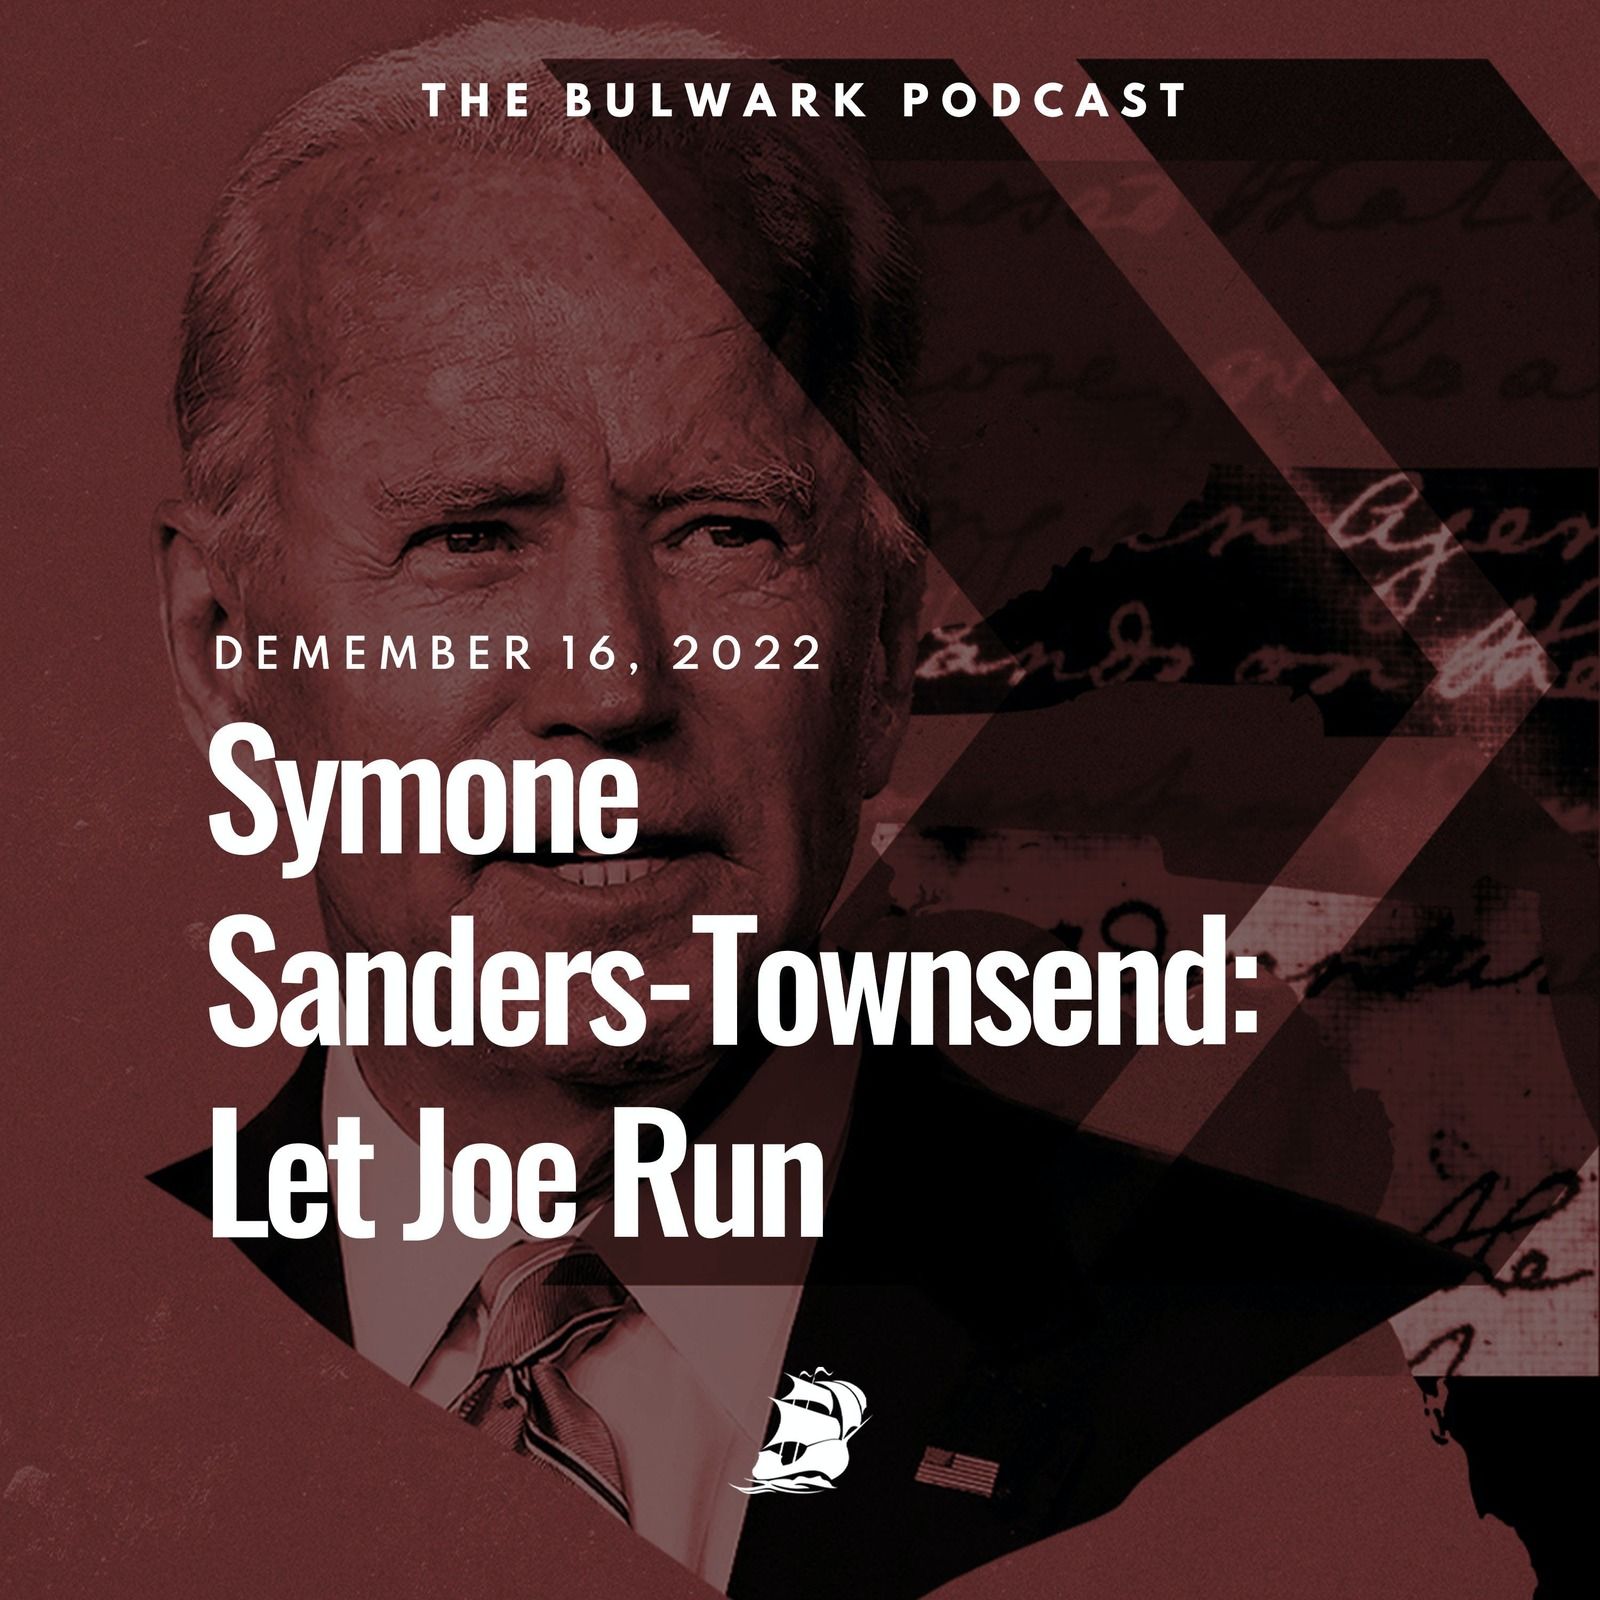 Symone Sanders-Townsend: Let Joe Run